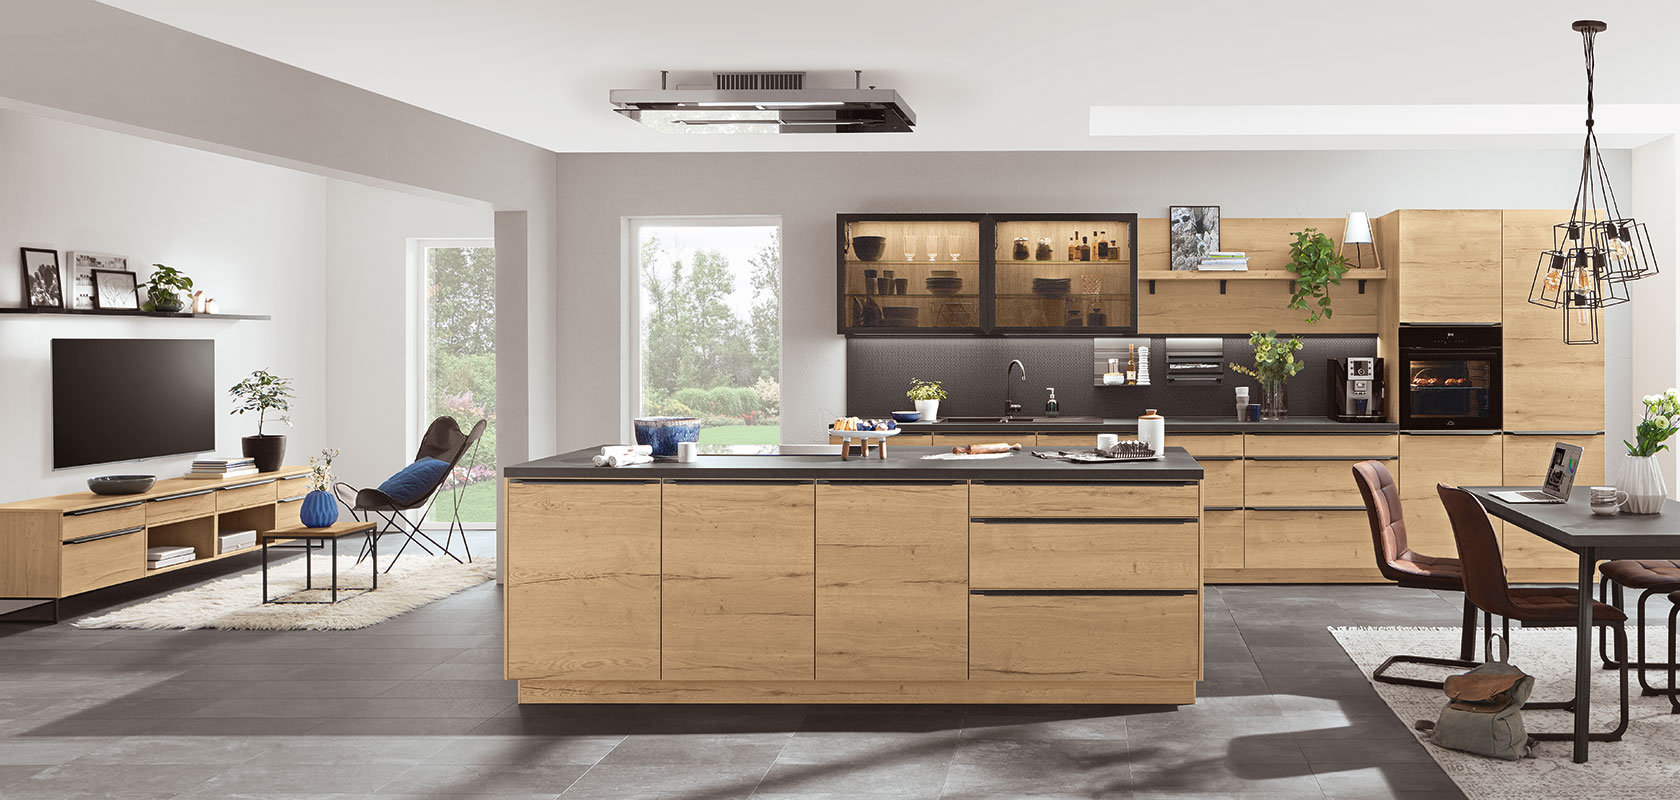 Espaciosa cocina moderna con elegantes gabinetes de madera, electrodomésticos de acero inoxidable y una gran isla, que se integra perfectamente a una acogedora área de estar con luz natural.